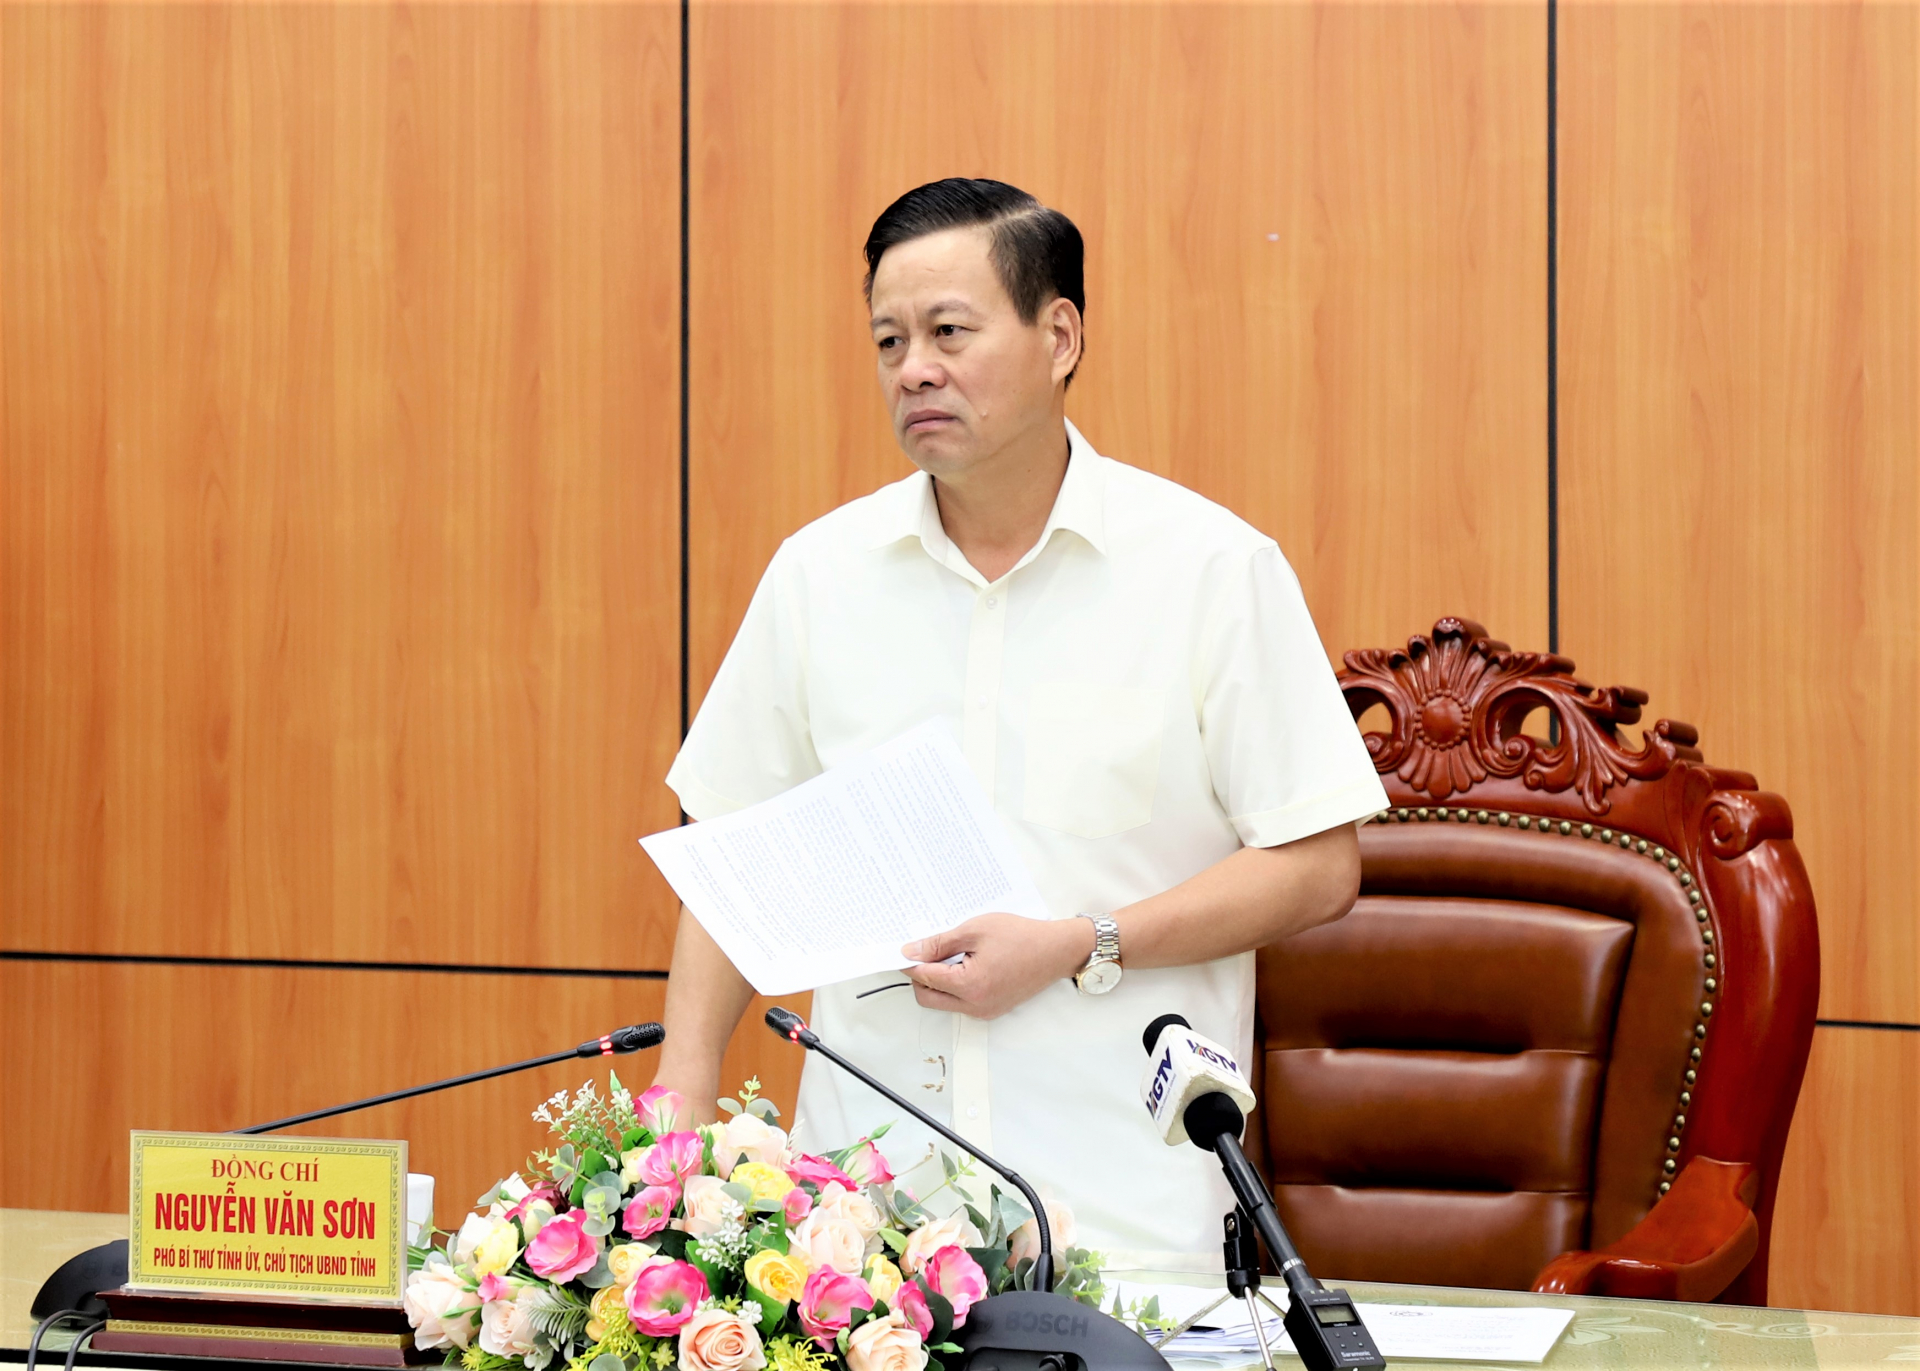 Chủ tịch UBND tỉnh Nguyễn Văn Sơn phát biểu tại buổi làm việc.